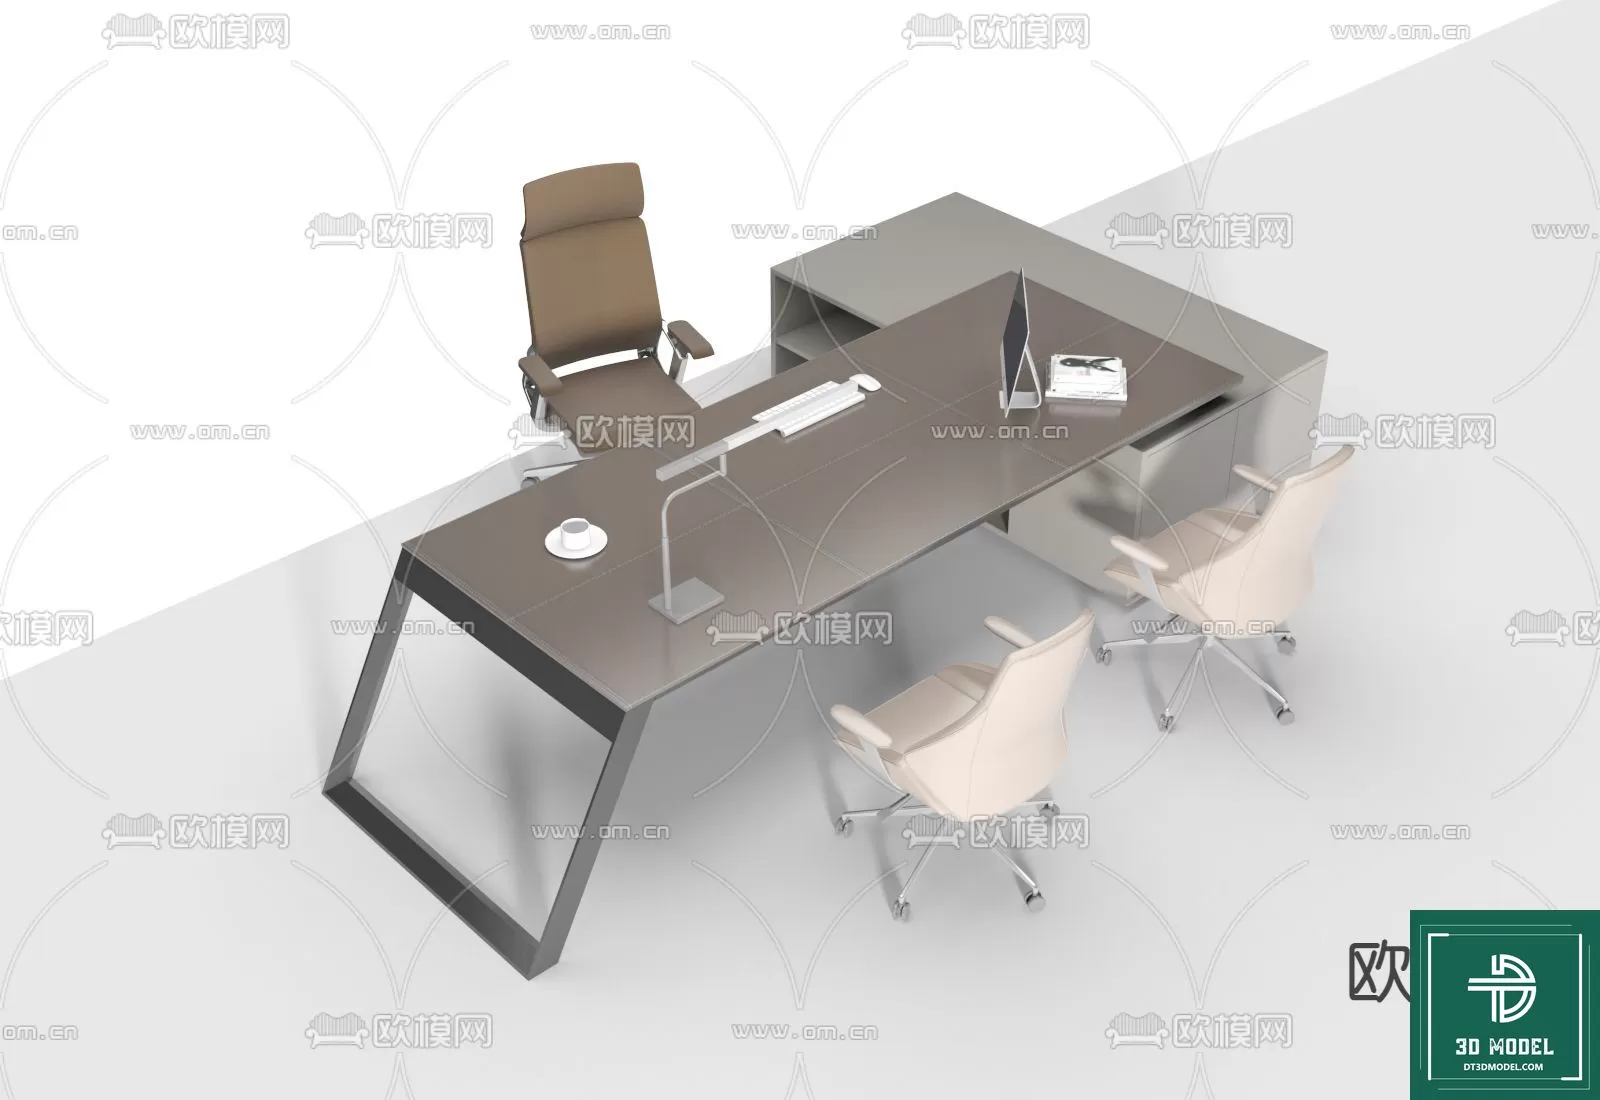 OFFICE TABLES – DESK 3DMODELS – 106